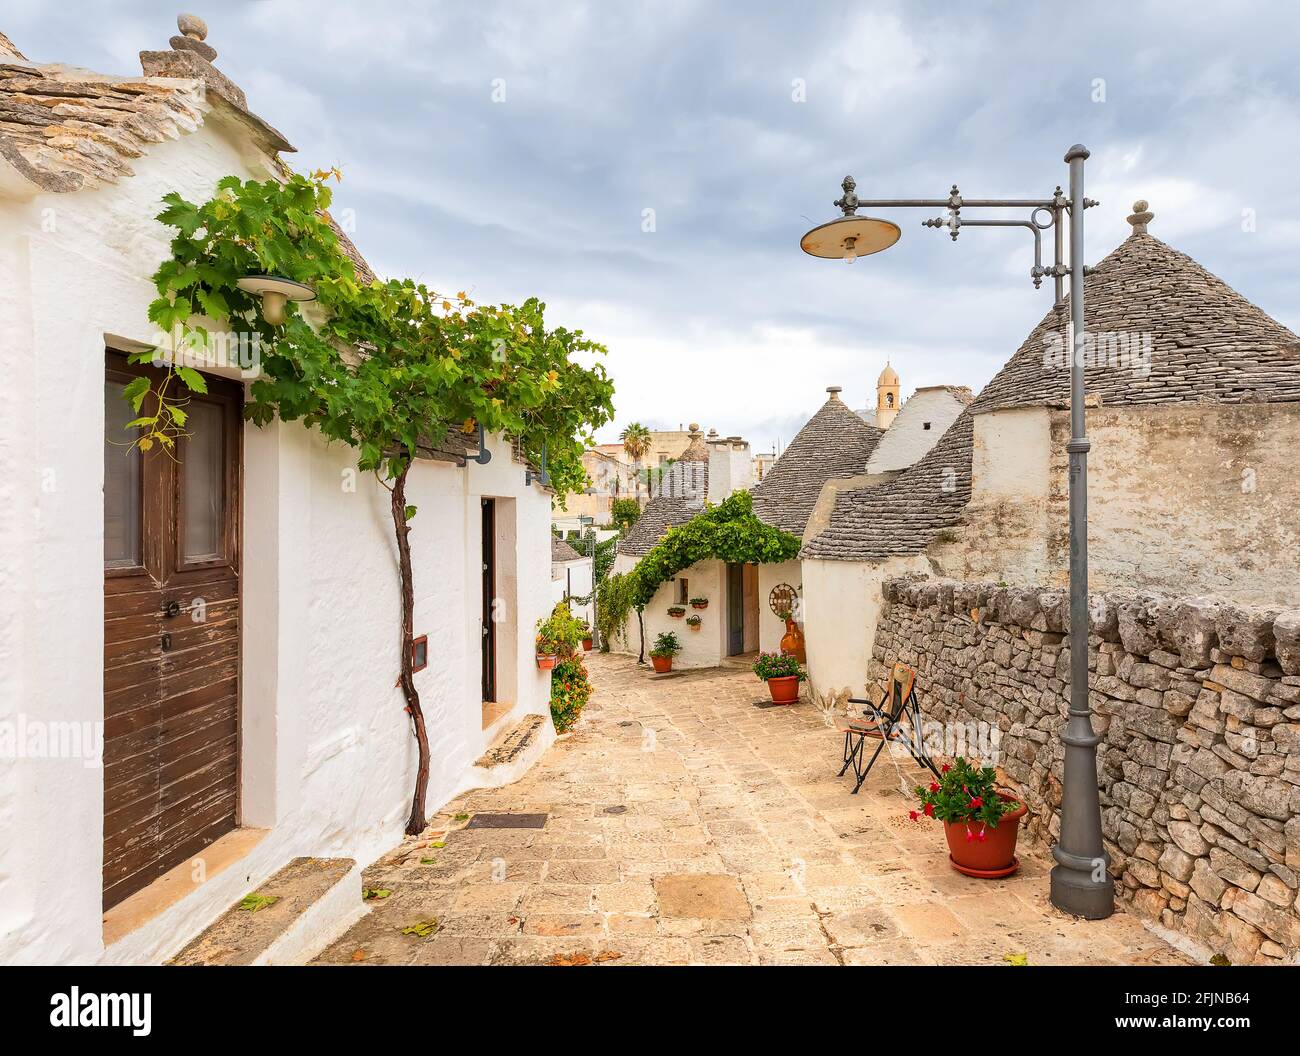 Stone`s  street of Alberobello village. Trulli buildings and grapevine, Pulia, Italy Stock Photo